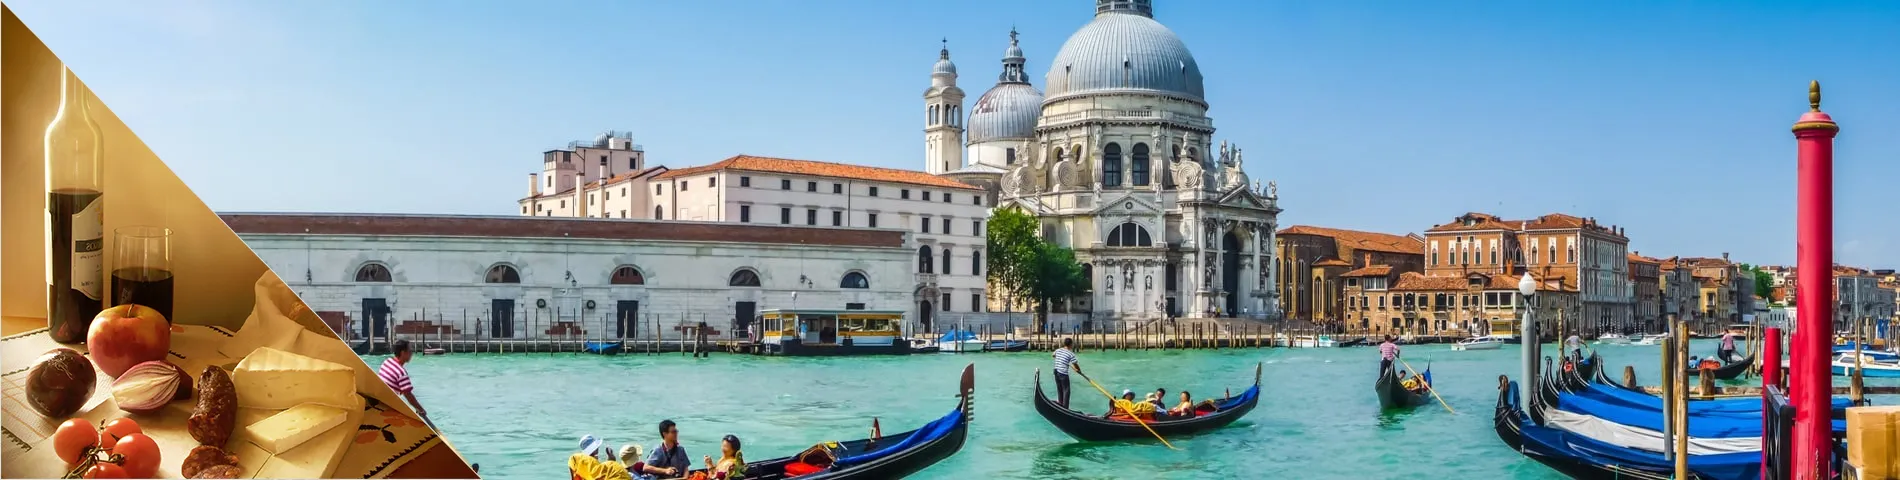 Венеція - італійська та пізнання культури